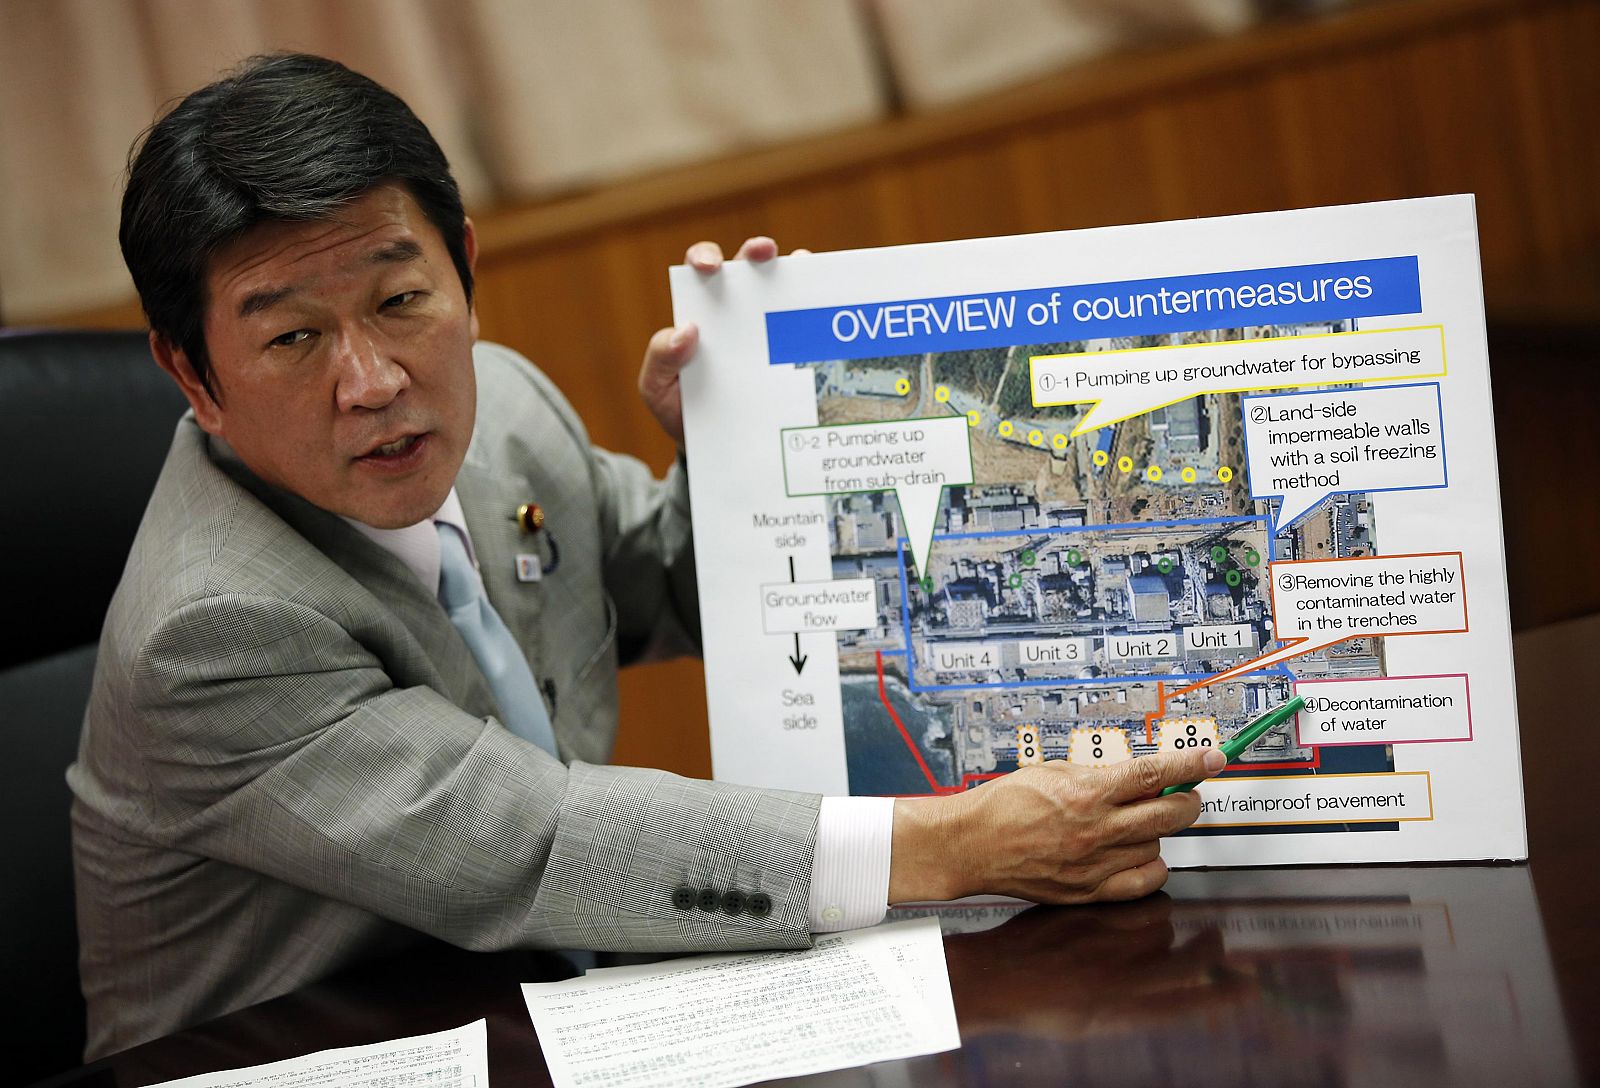 El ministro de Economía, Industria y Comercio de Japón, Toshimitsu Motegi, explica las contramedidas planificadas para subsanar las filtraciones de agua contaminada en la central nuclear de Fukushima